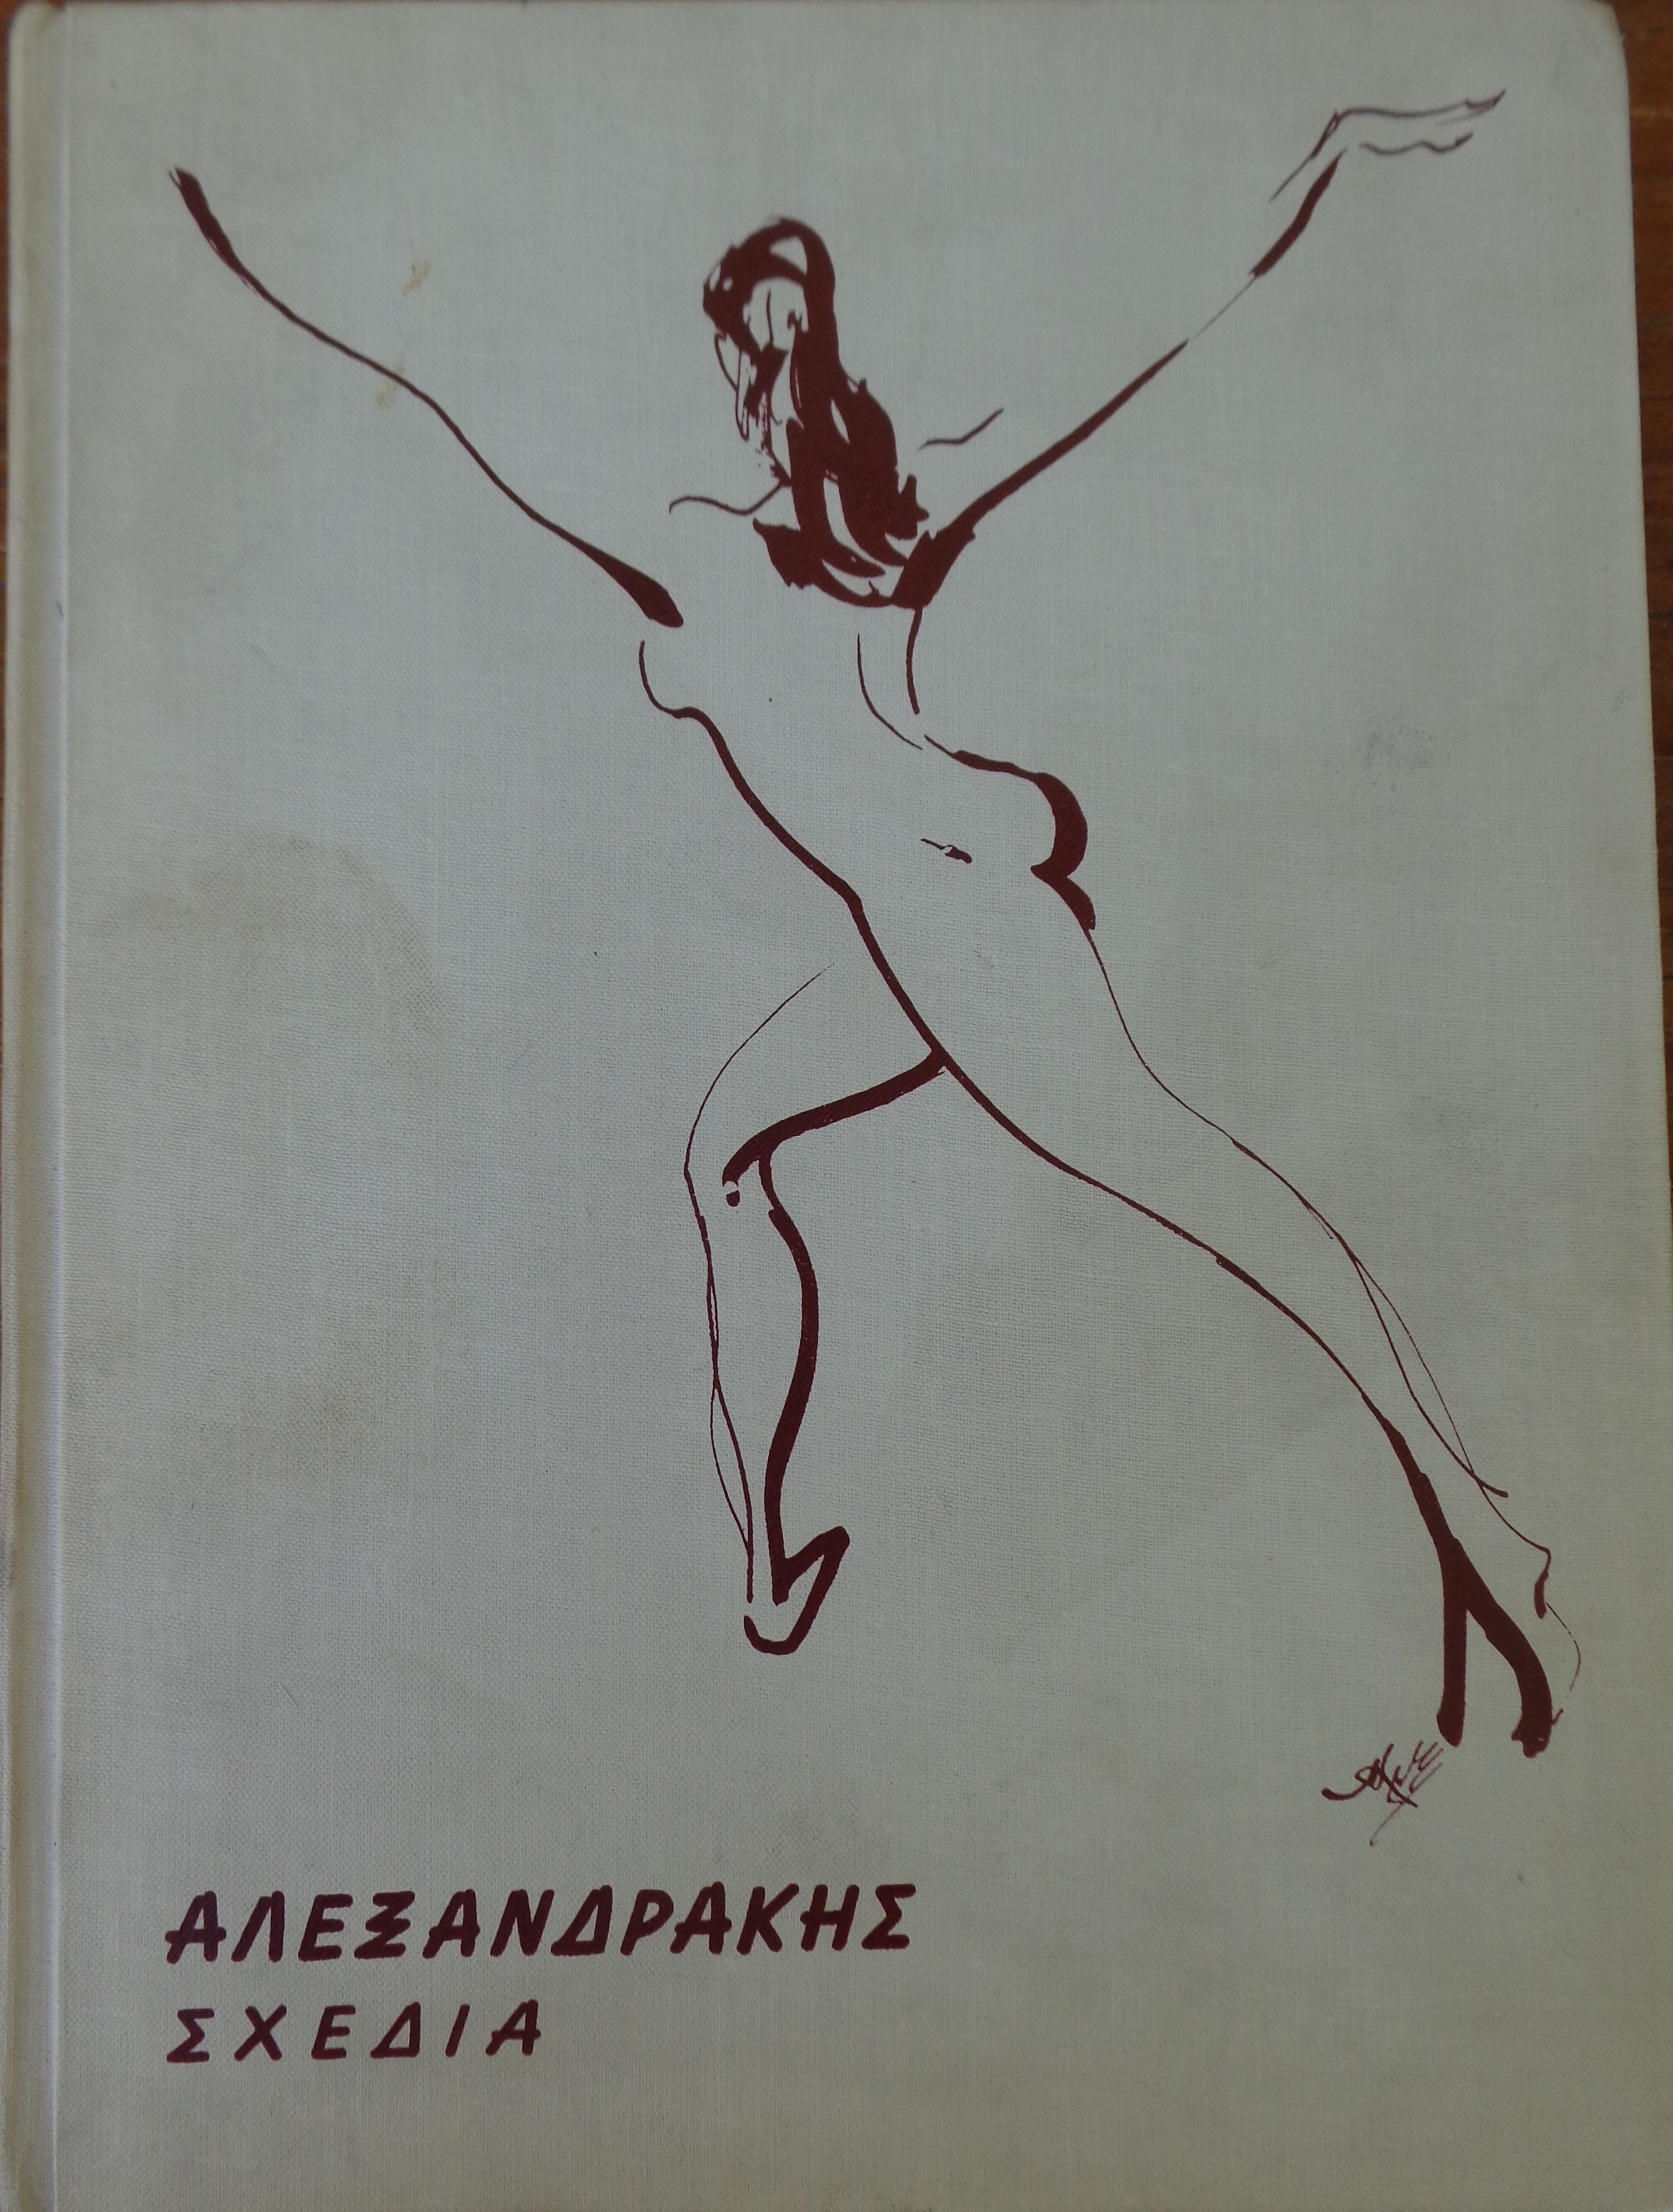 ΑΛΕΞΑΝΔΡΑΚΗΣ ΑΛΕΞΑΝΔΡΟΣ   Σχέδια    Ιδιωτική έκδοση, Λευκωσία, 1970  